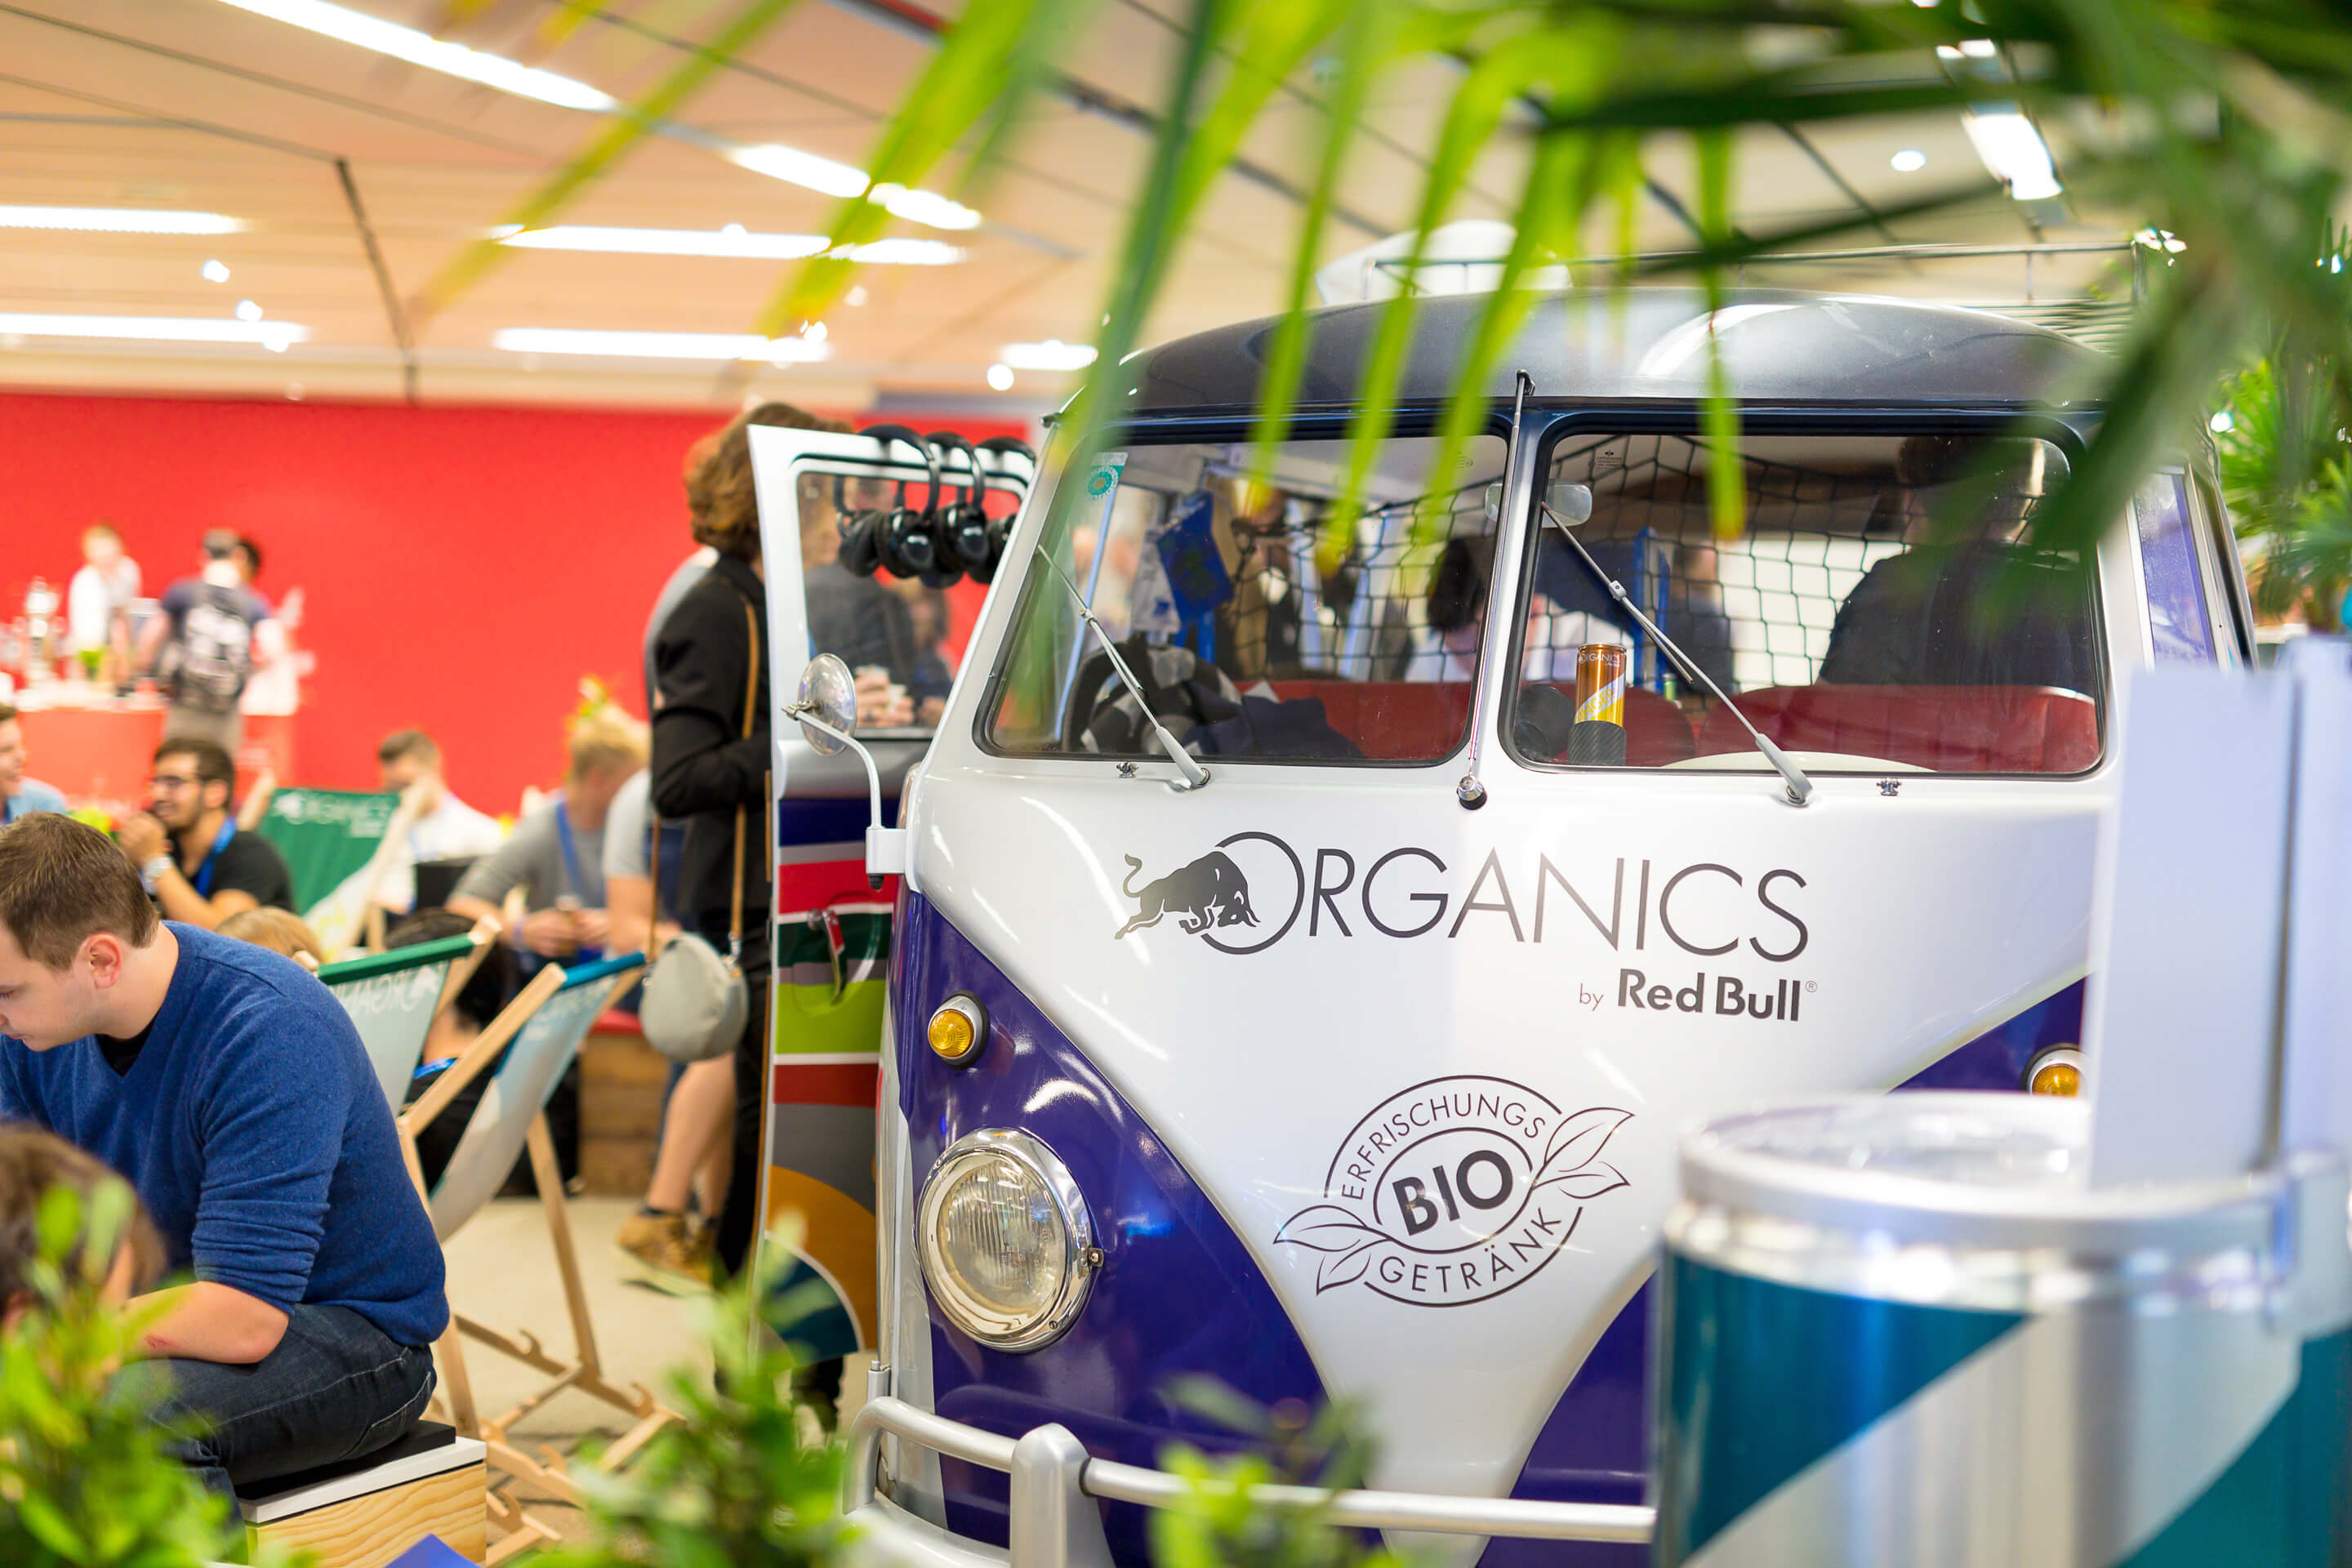 Foto: Red Bull Organics Bus, Galerie